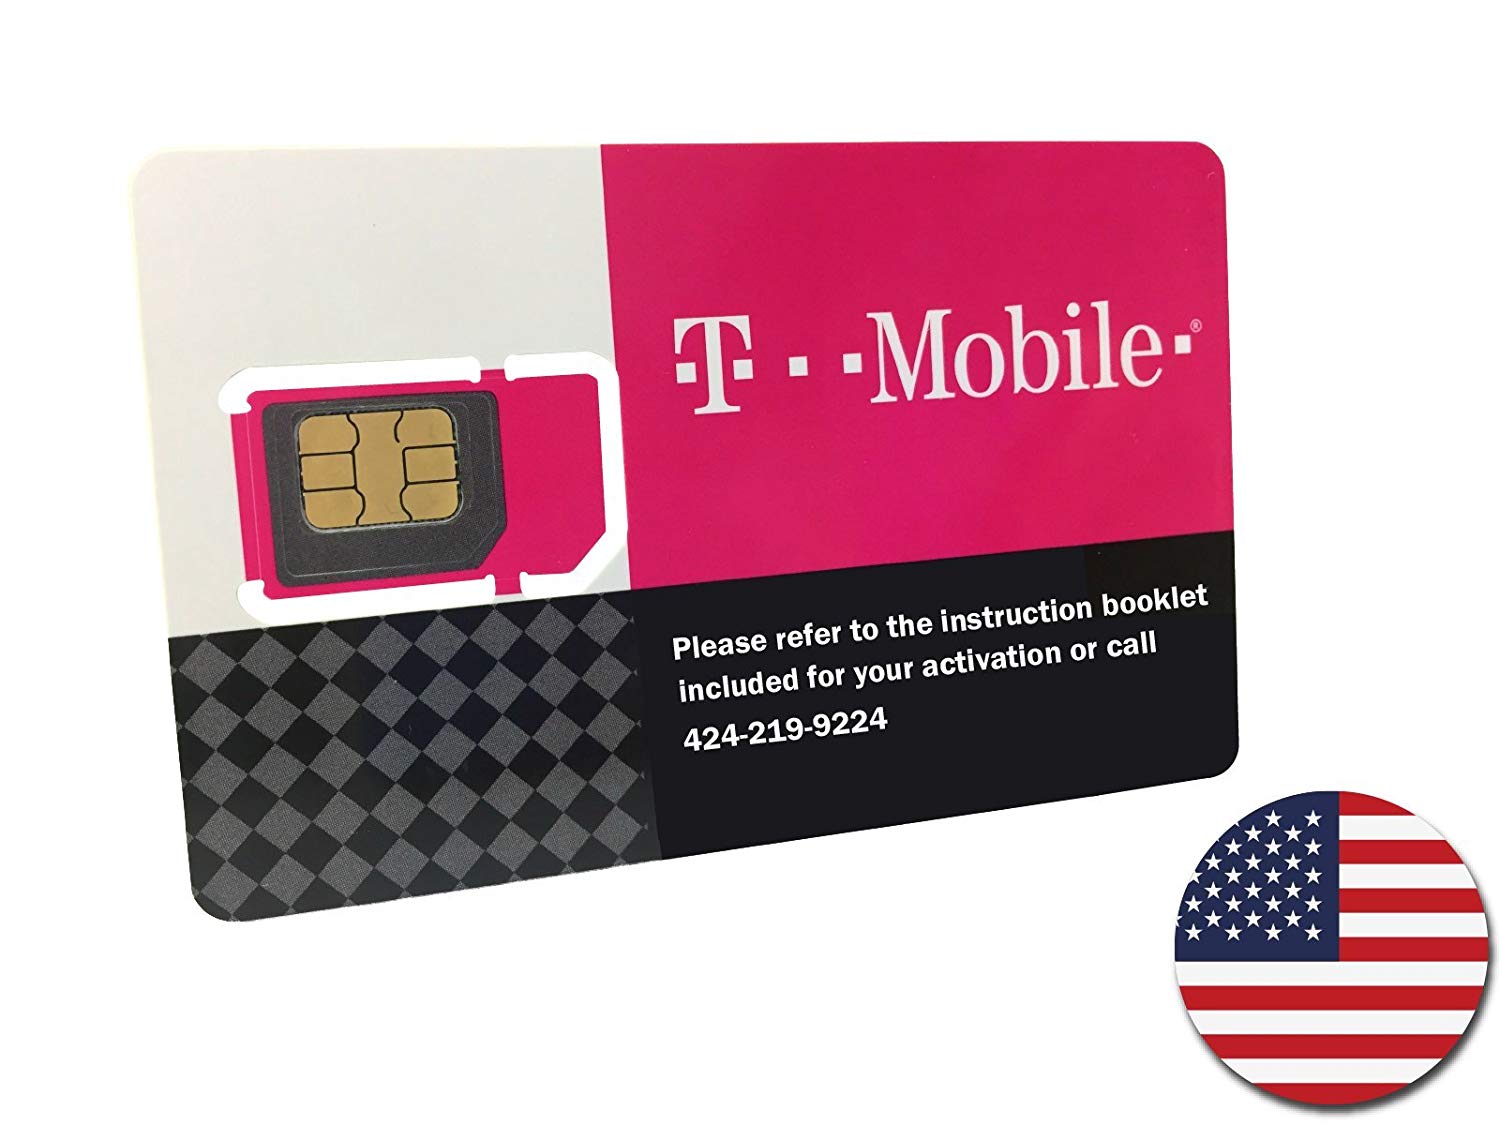 כרטיס סים לארה״ב - סים לארצות הברית גלישה ללא הגבלה ברשת T-mobile